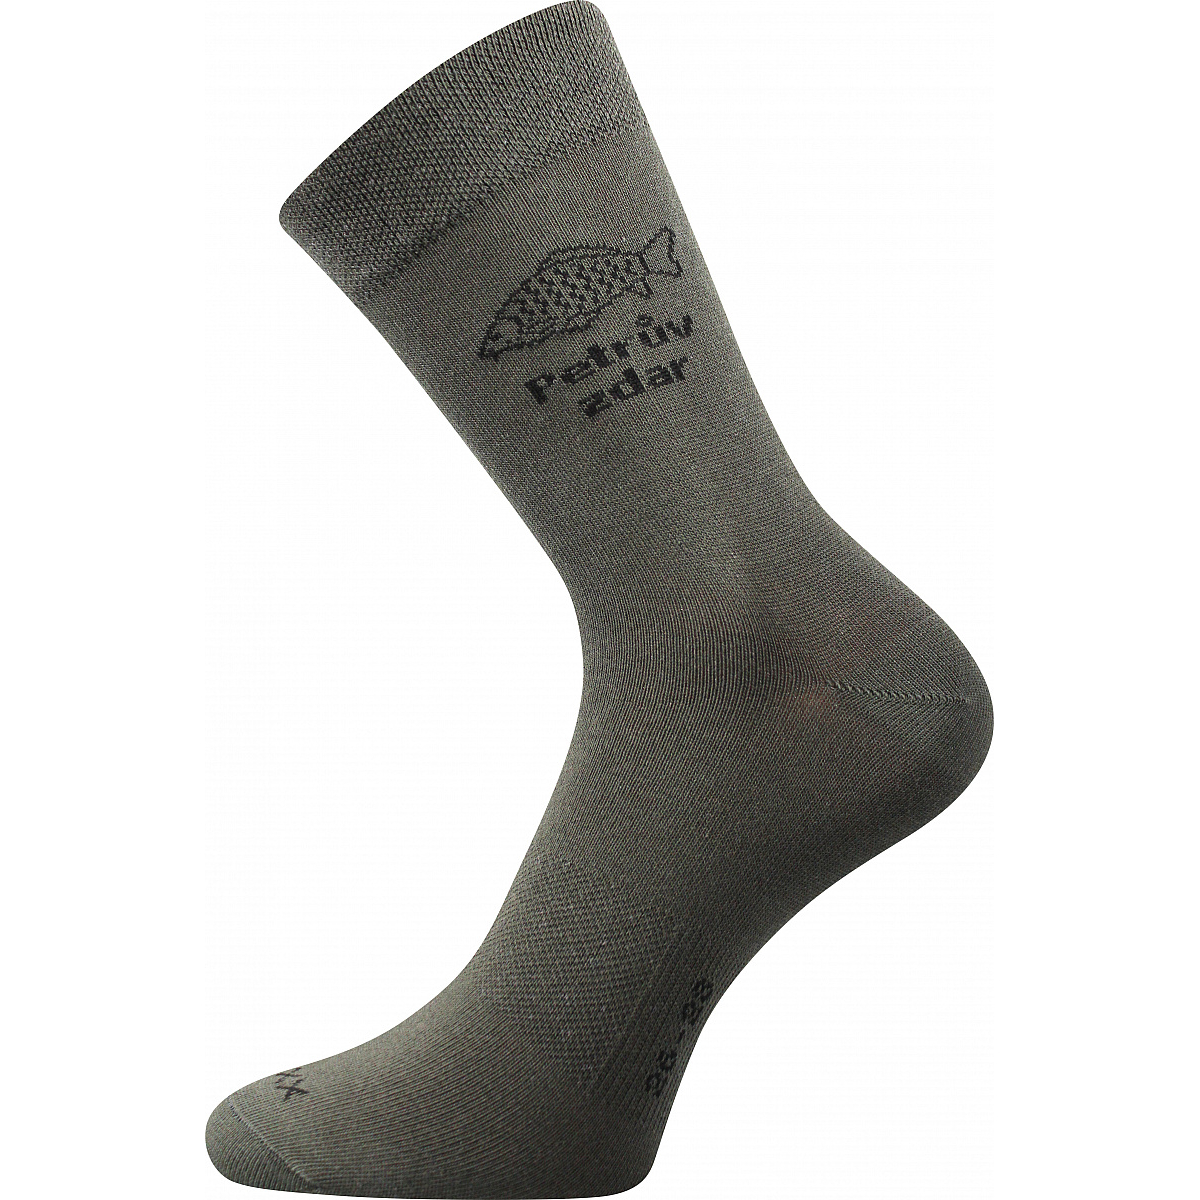 Lovecké ponožky Voxx Lassy Ryby - olivové, 43-46